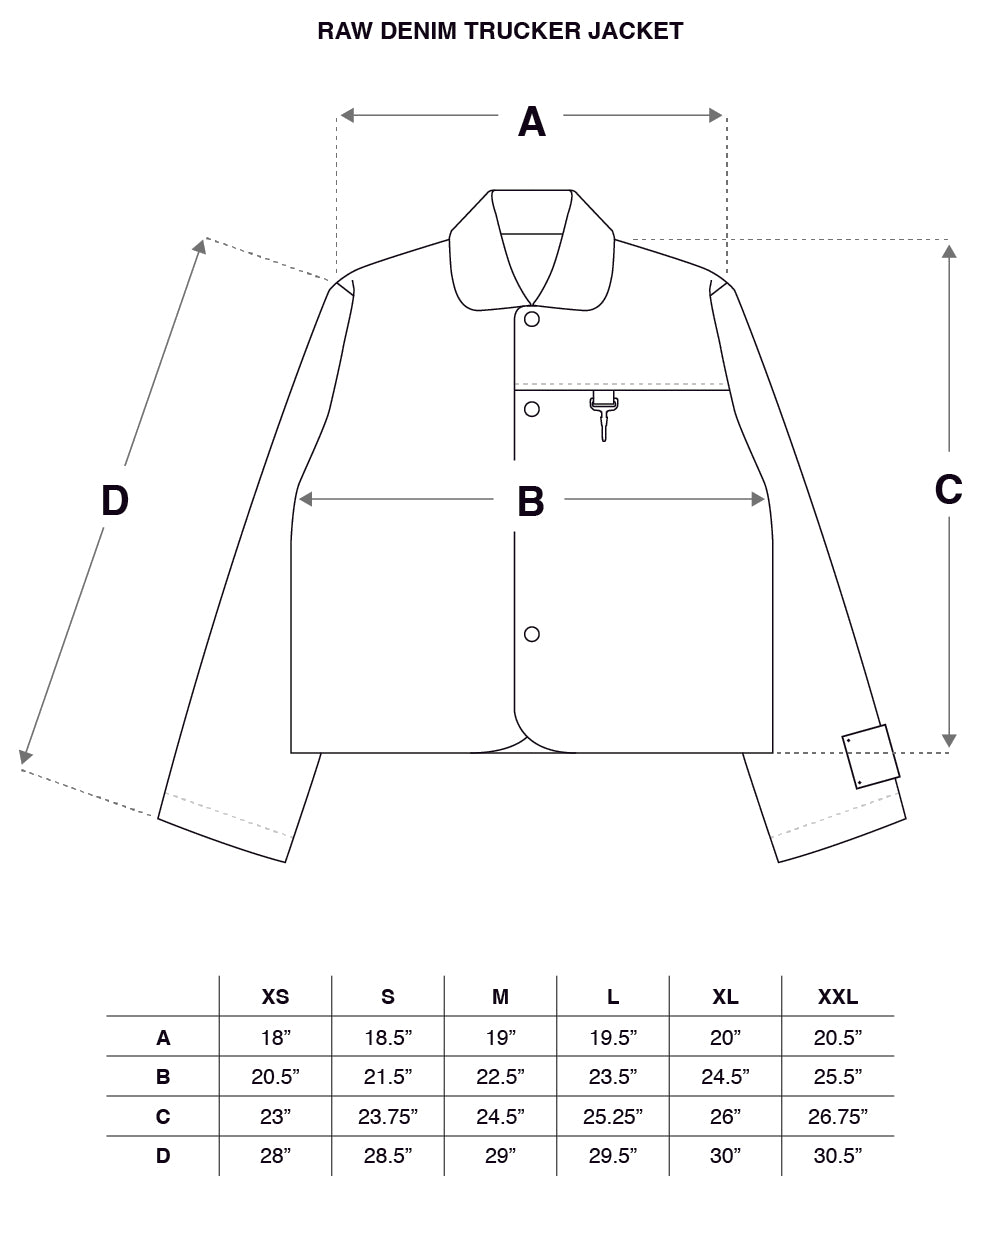 Raw Denim Trucker Jacket in Indigo Size Guide